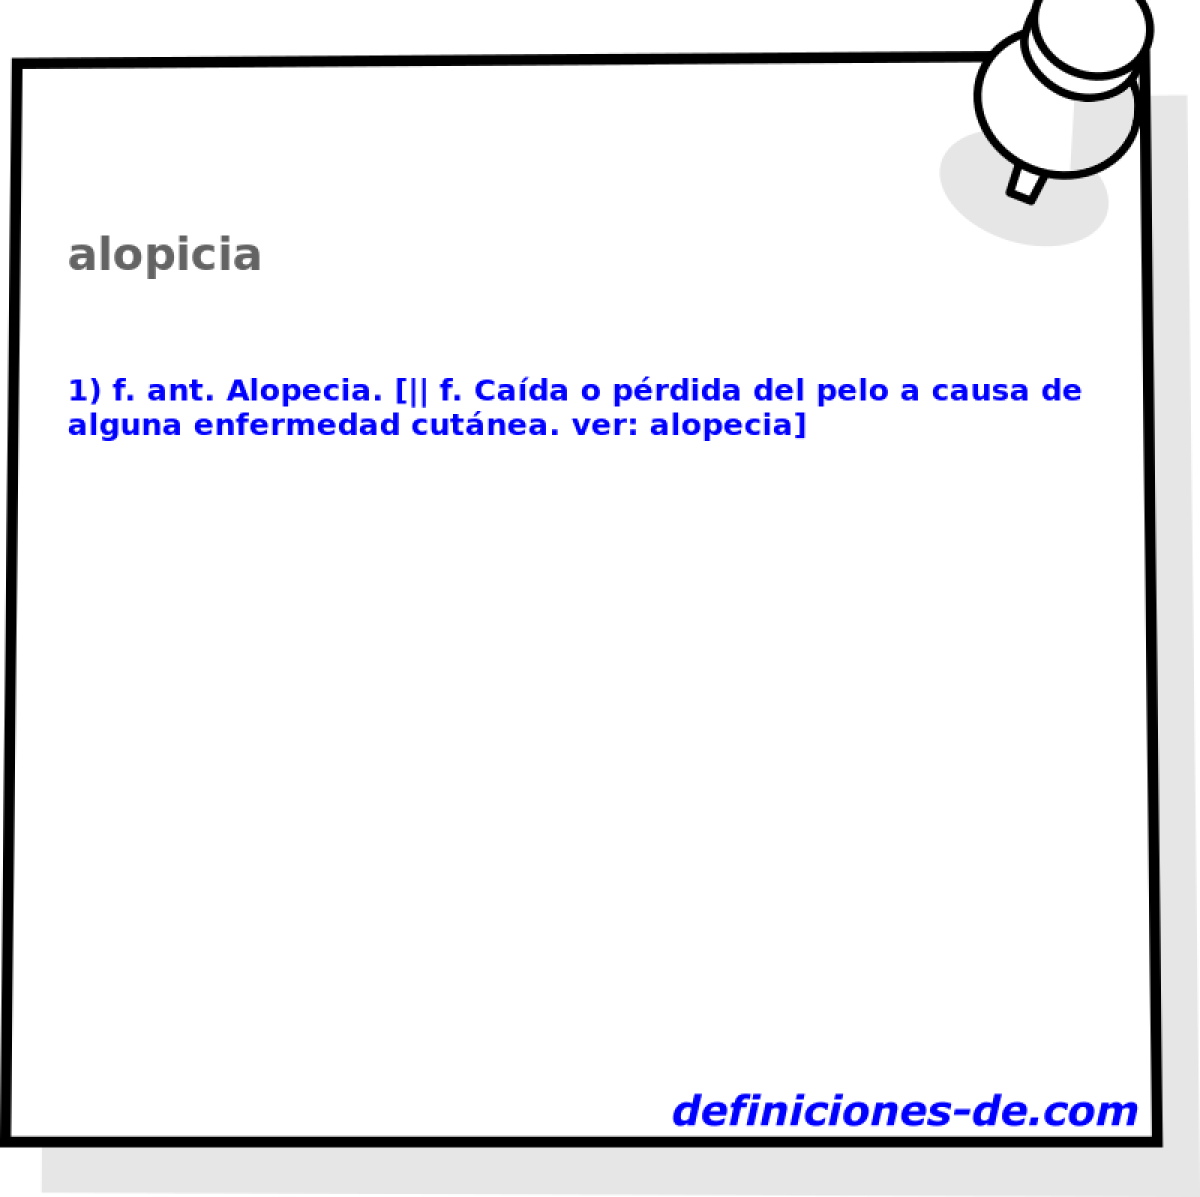 alopicia 